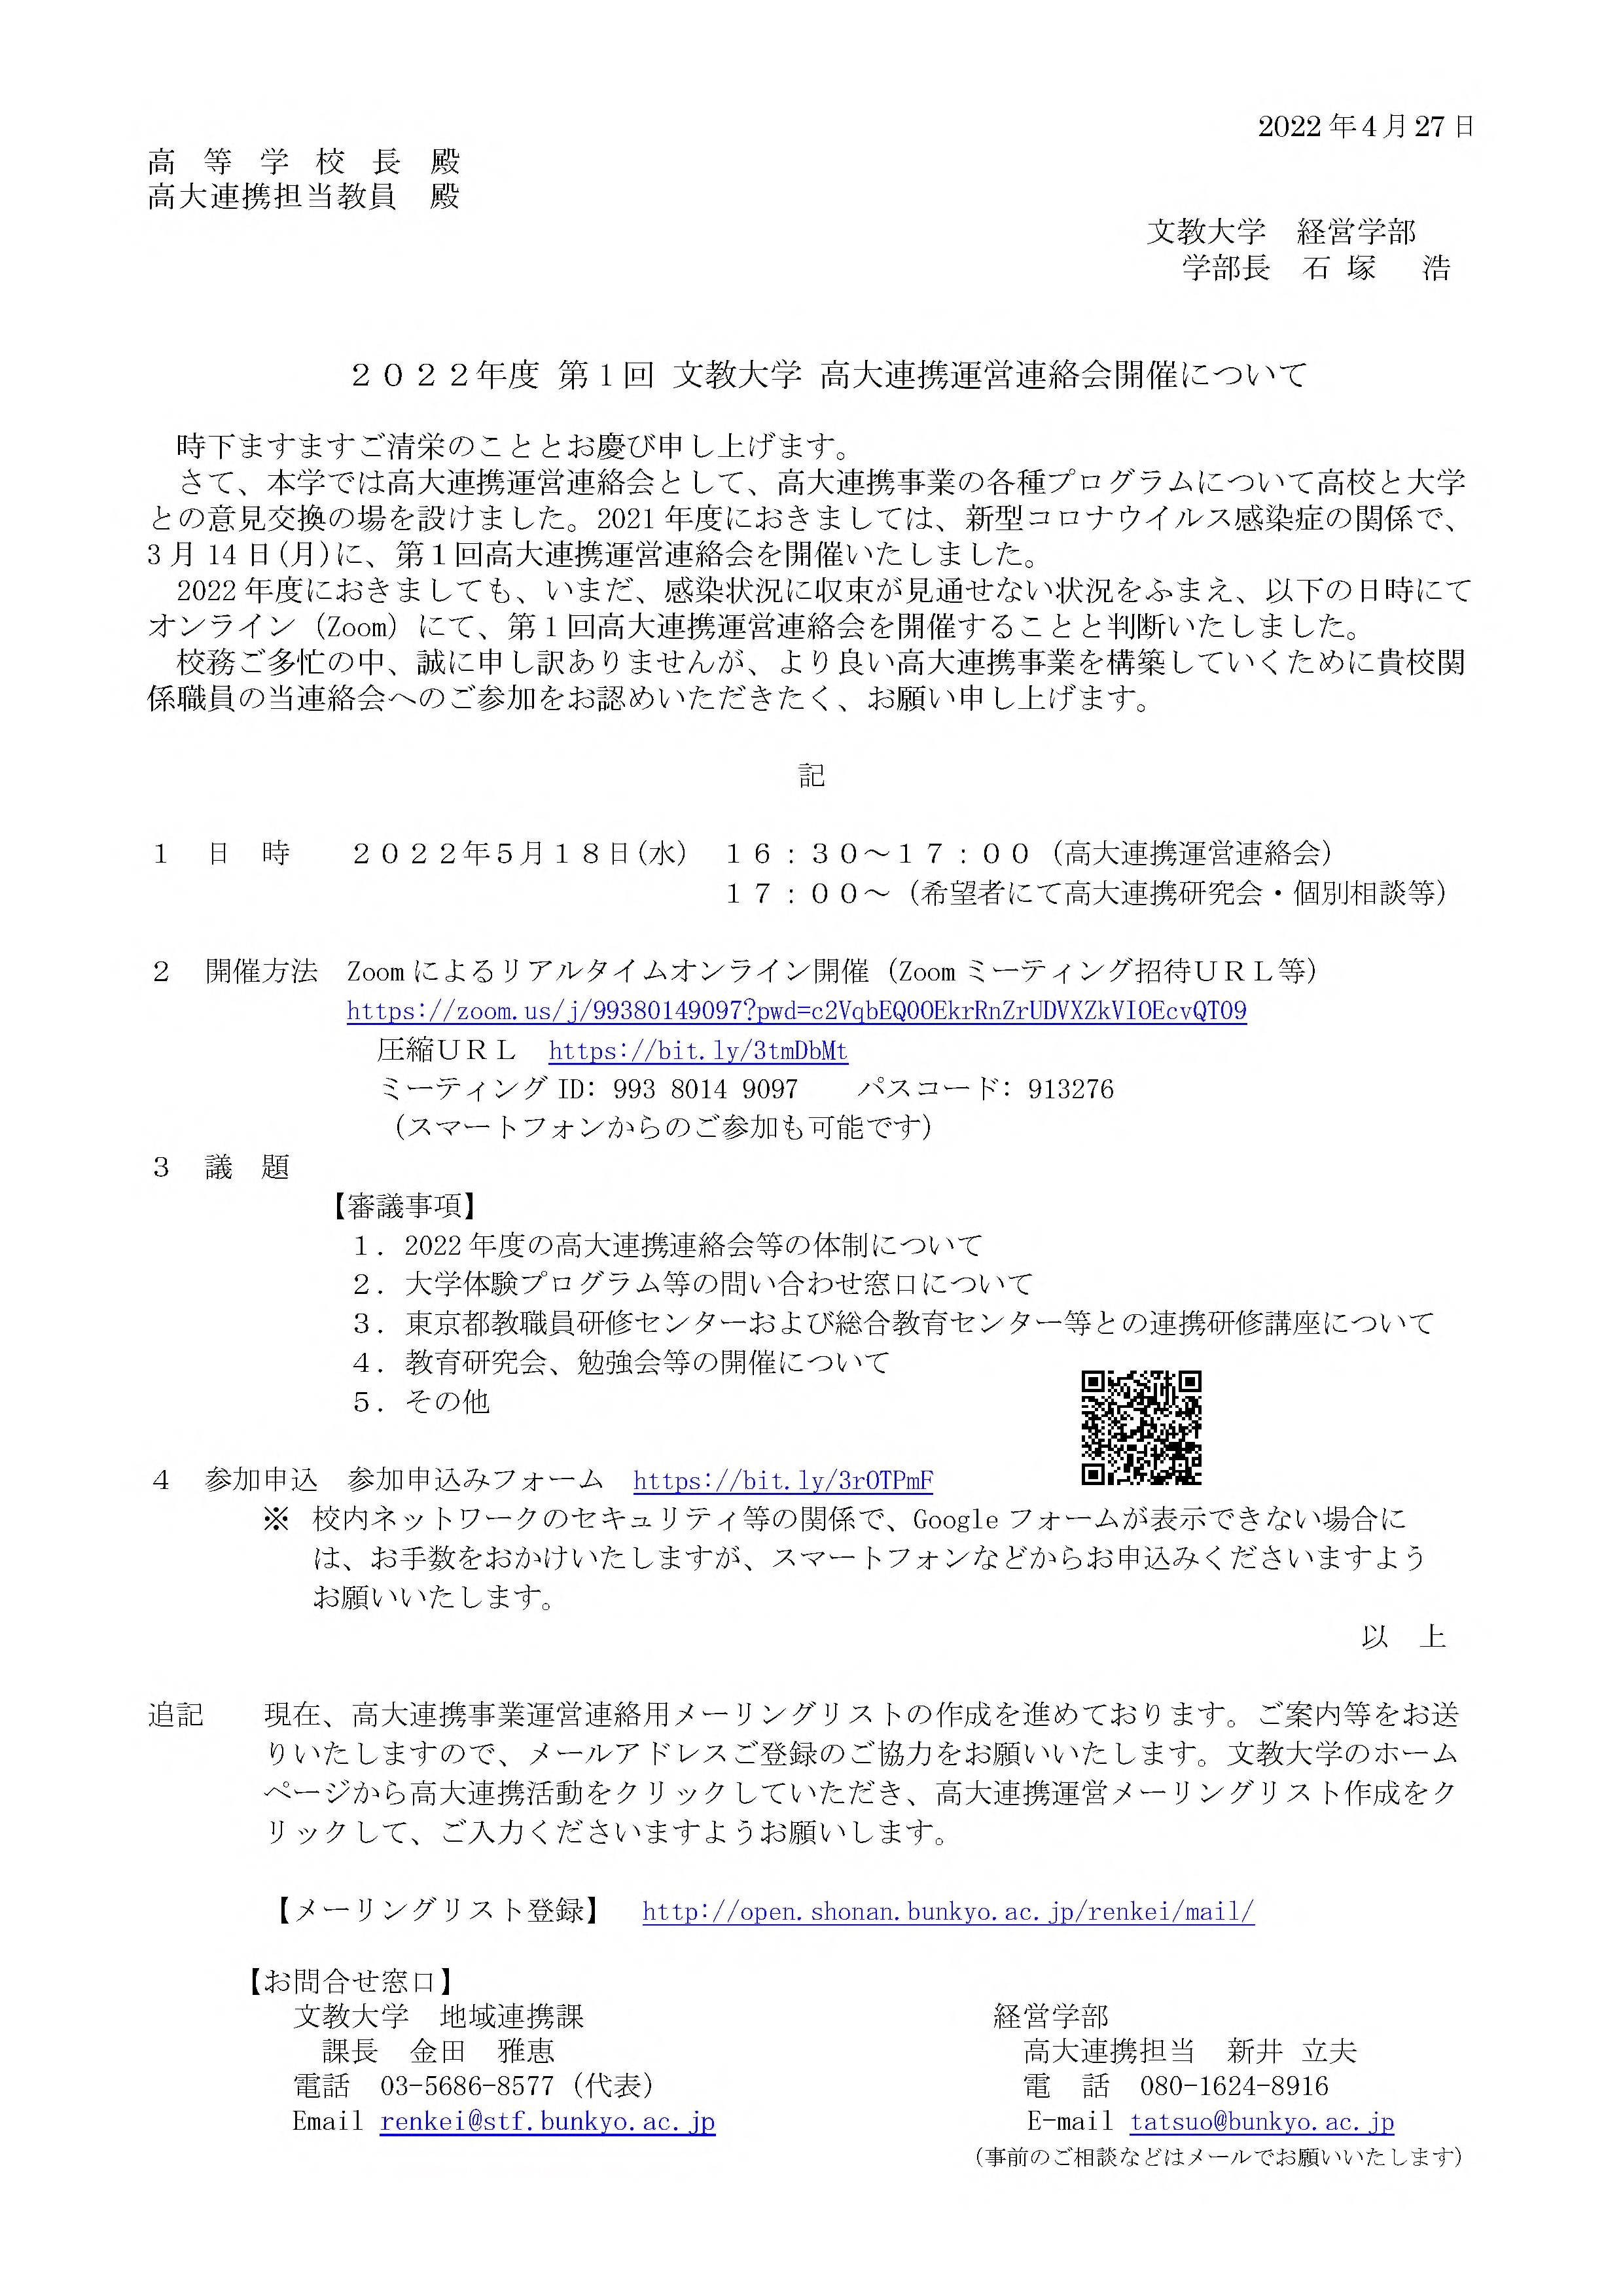 2022.5.18 (水) 　「高大連携運営連絡会」  オンライン開催通知文　（配信版）.jpg